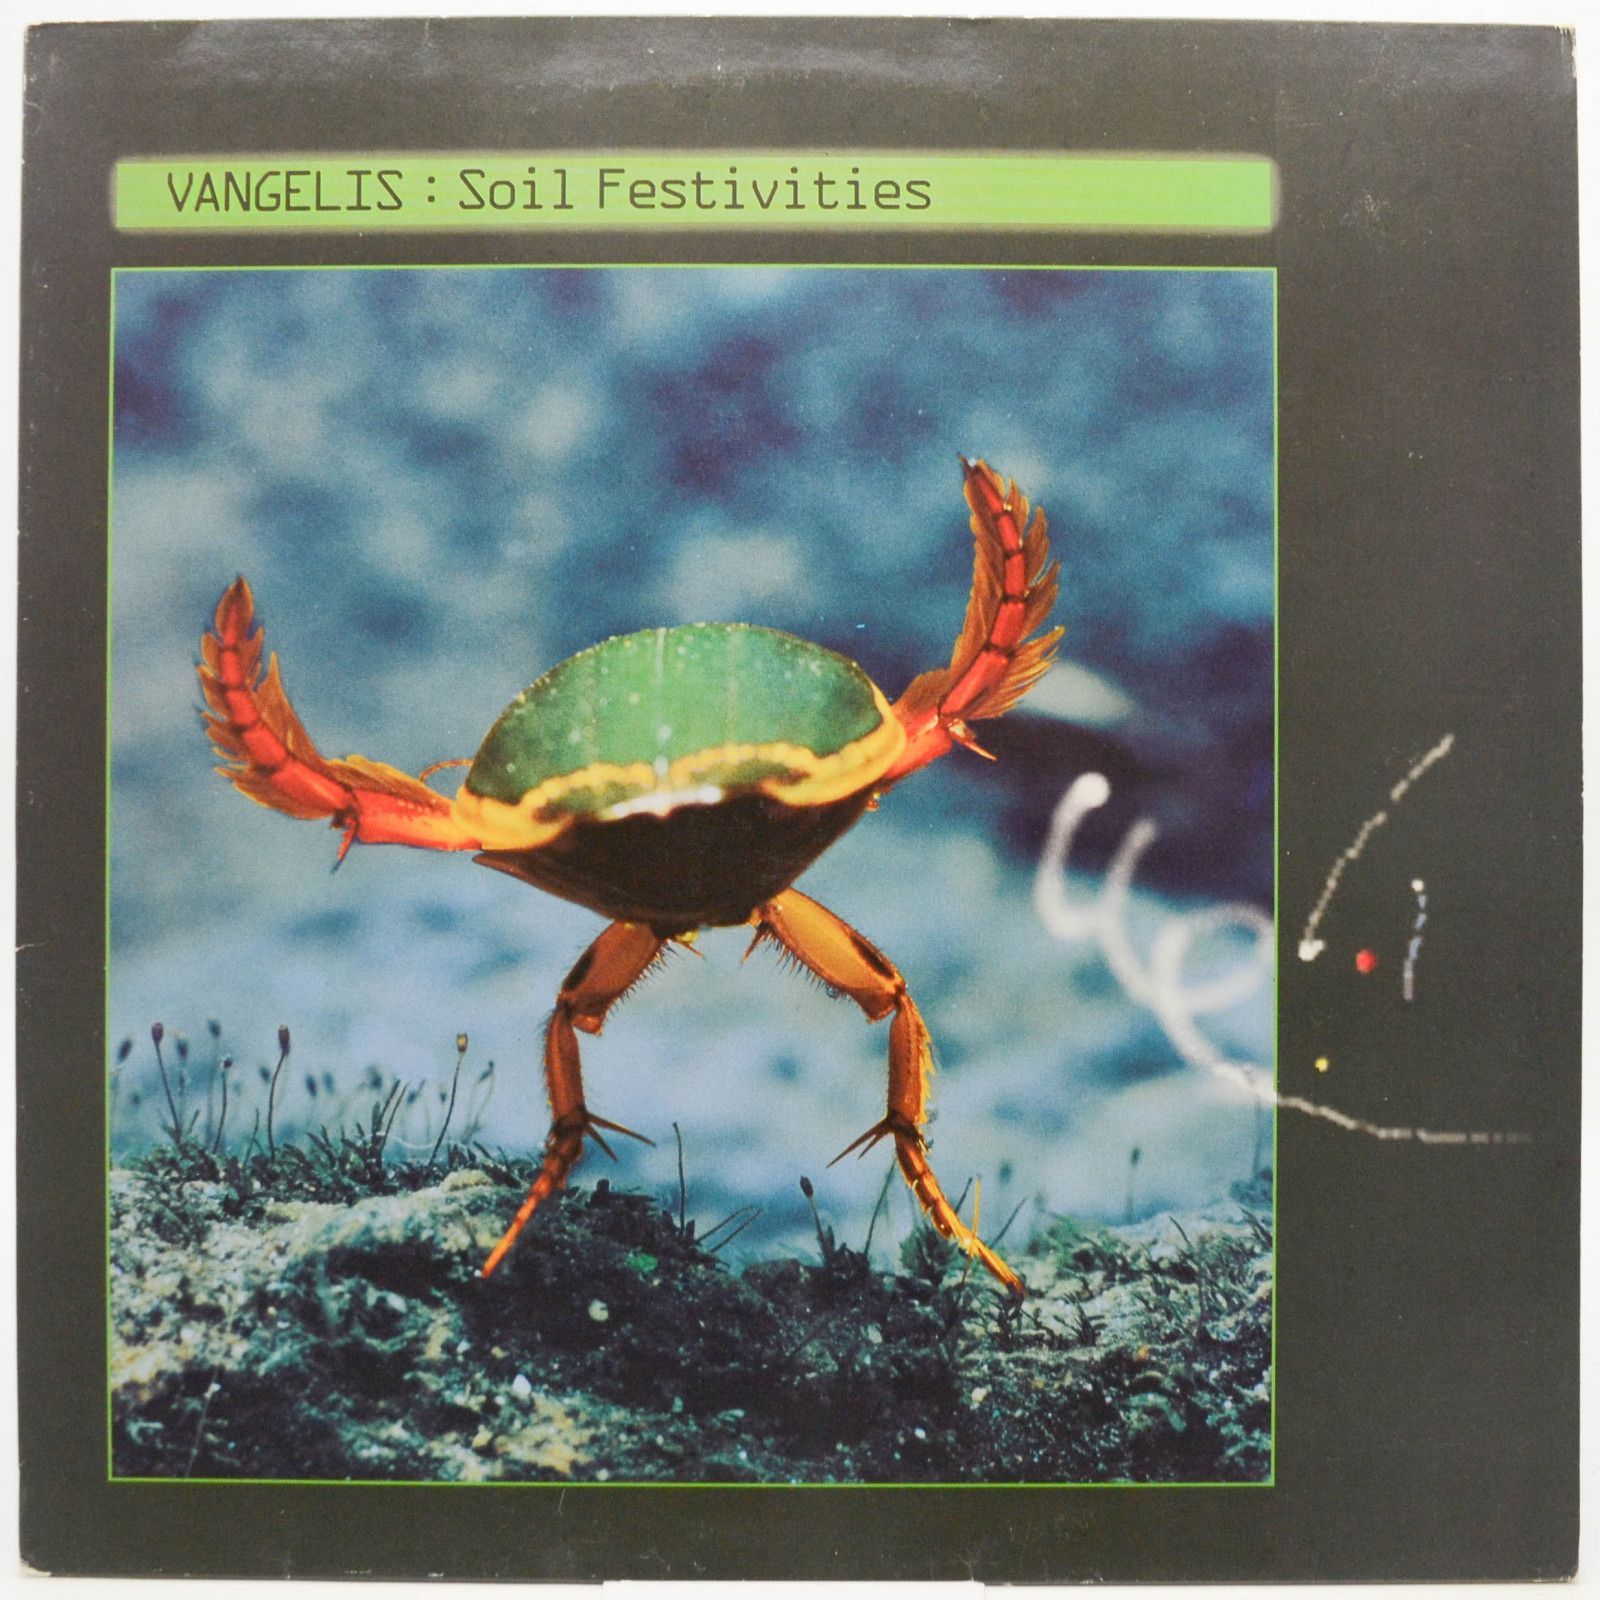 Vangelis — Soil Festivities, 1984